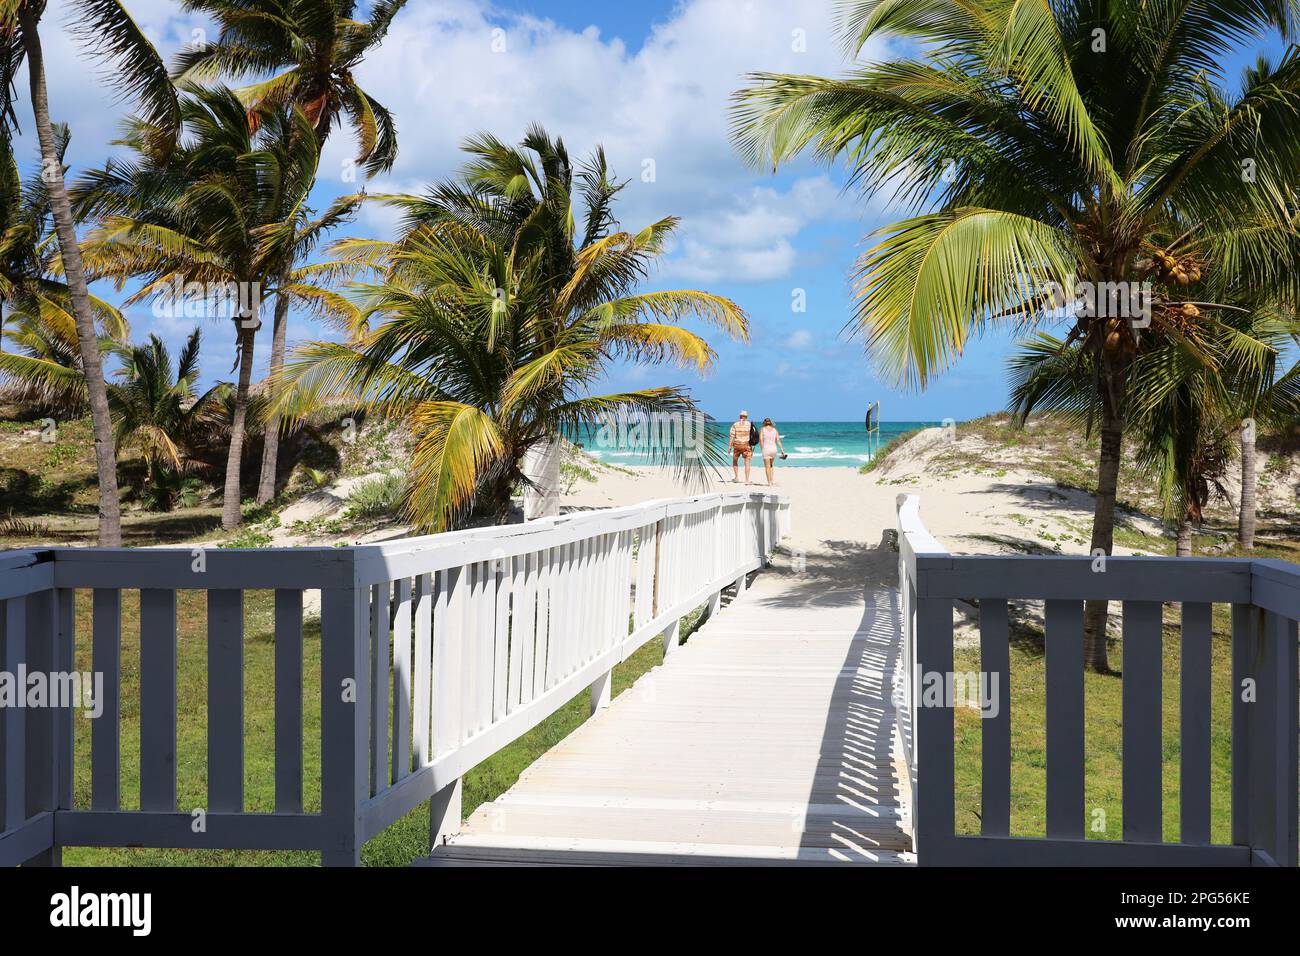 Vue pittoresque sur la plage tropicale avec sable blanc et palmiers à noix de coco. Chemin en bois vers la côte océanique, station touristique sur l'île des Caraïbes Banque D'Images